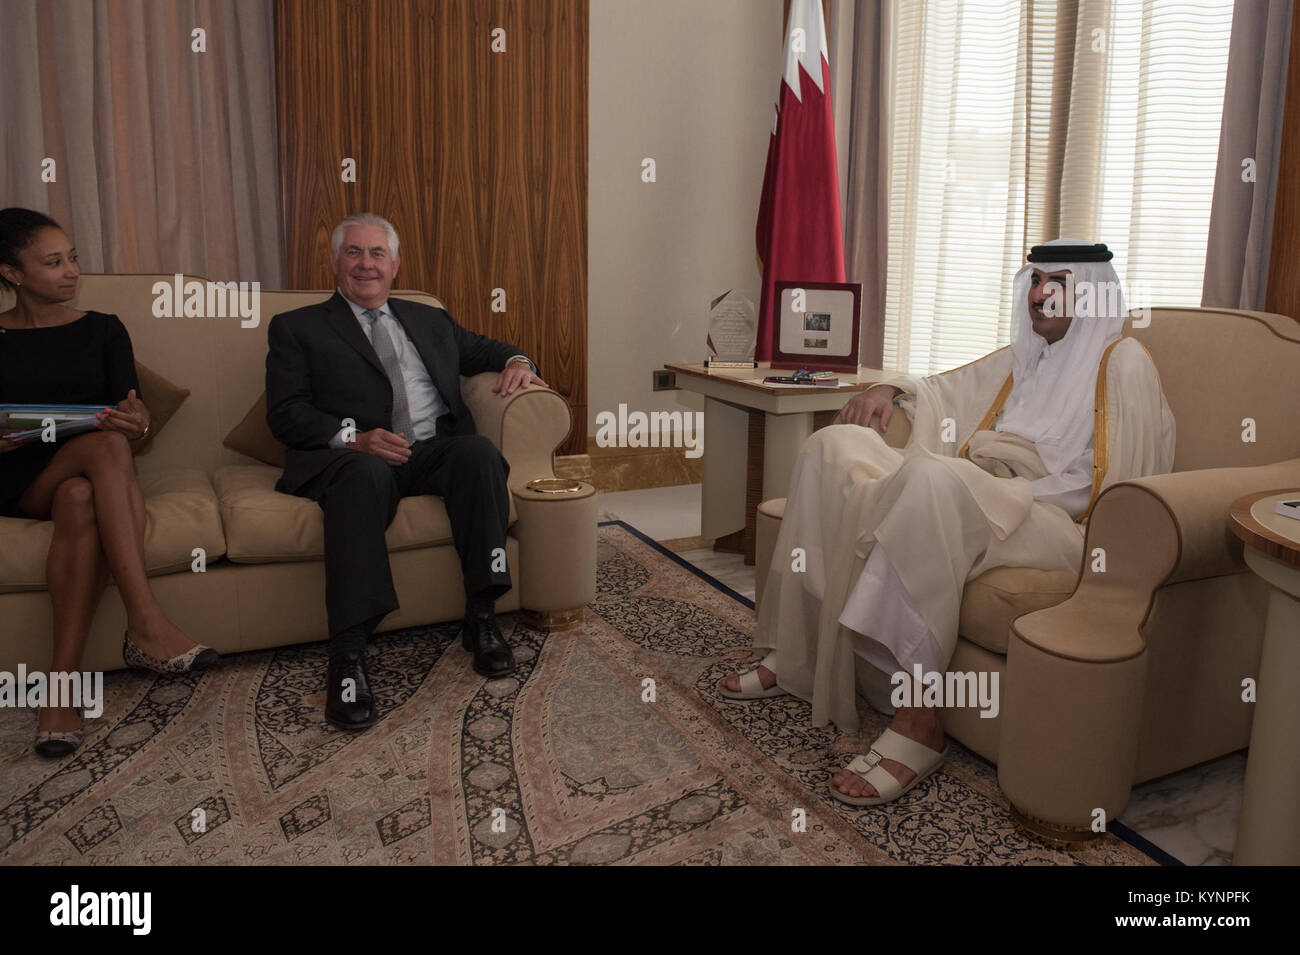 La secrétaire d'État des États-Unis, Rex Tillerson rencontre l'Emir du Qatar, Son Altesse Cheikh Tamim Bin Hamad Al Thani, à la mer à Doha, Qatar, le 11 juillet 2017. Tillerson secrétaire rencontre l'Emir du Qatar à Doha 35856608346 o Banque D'Images